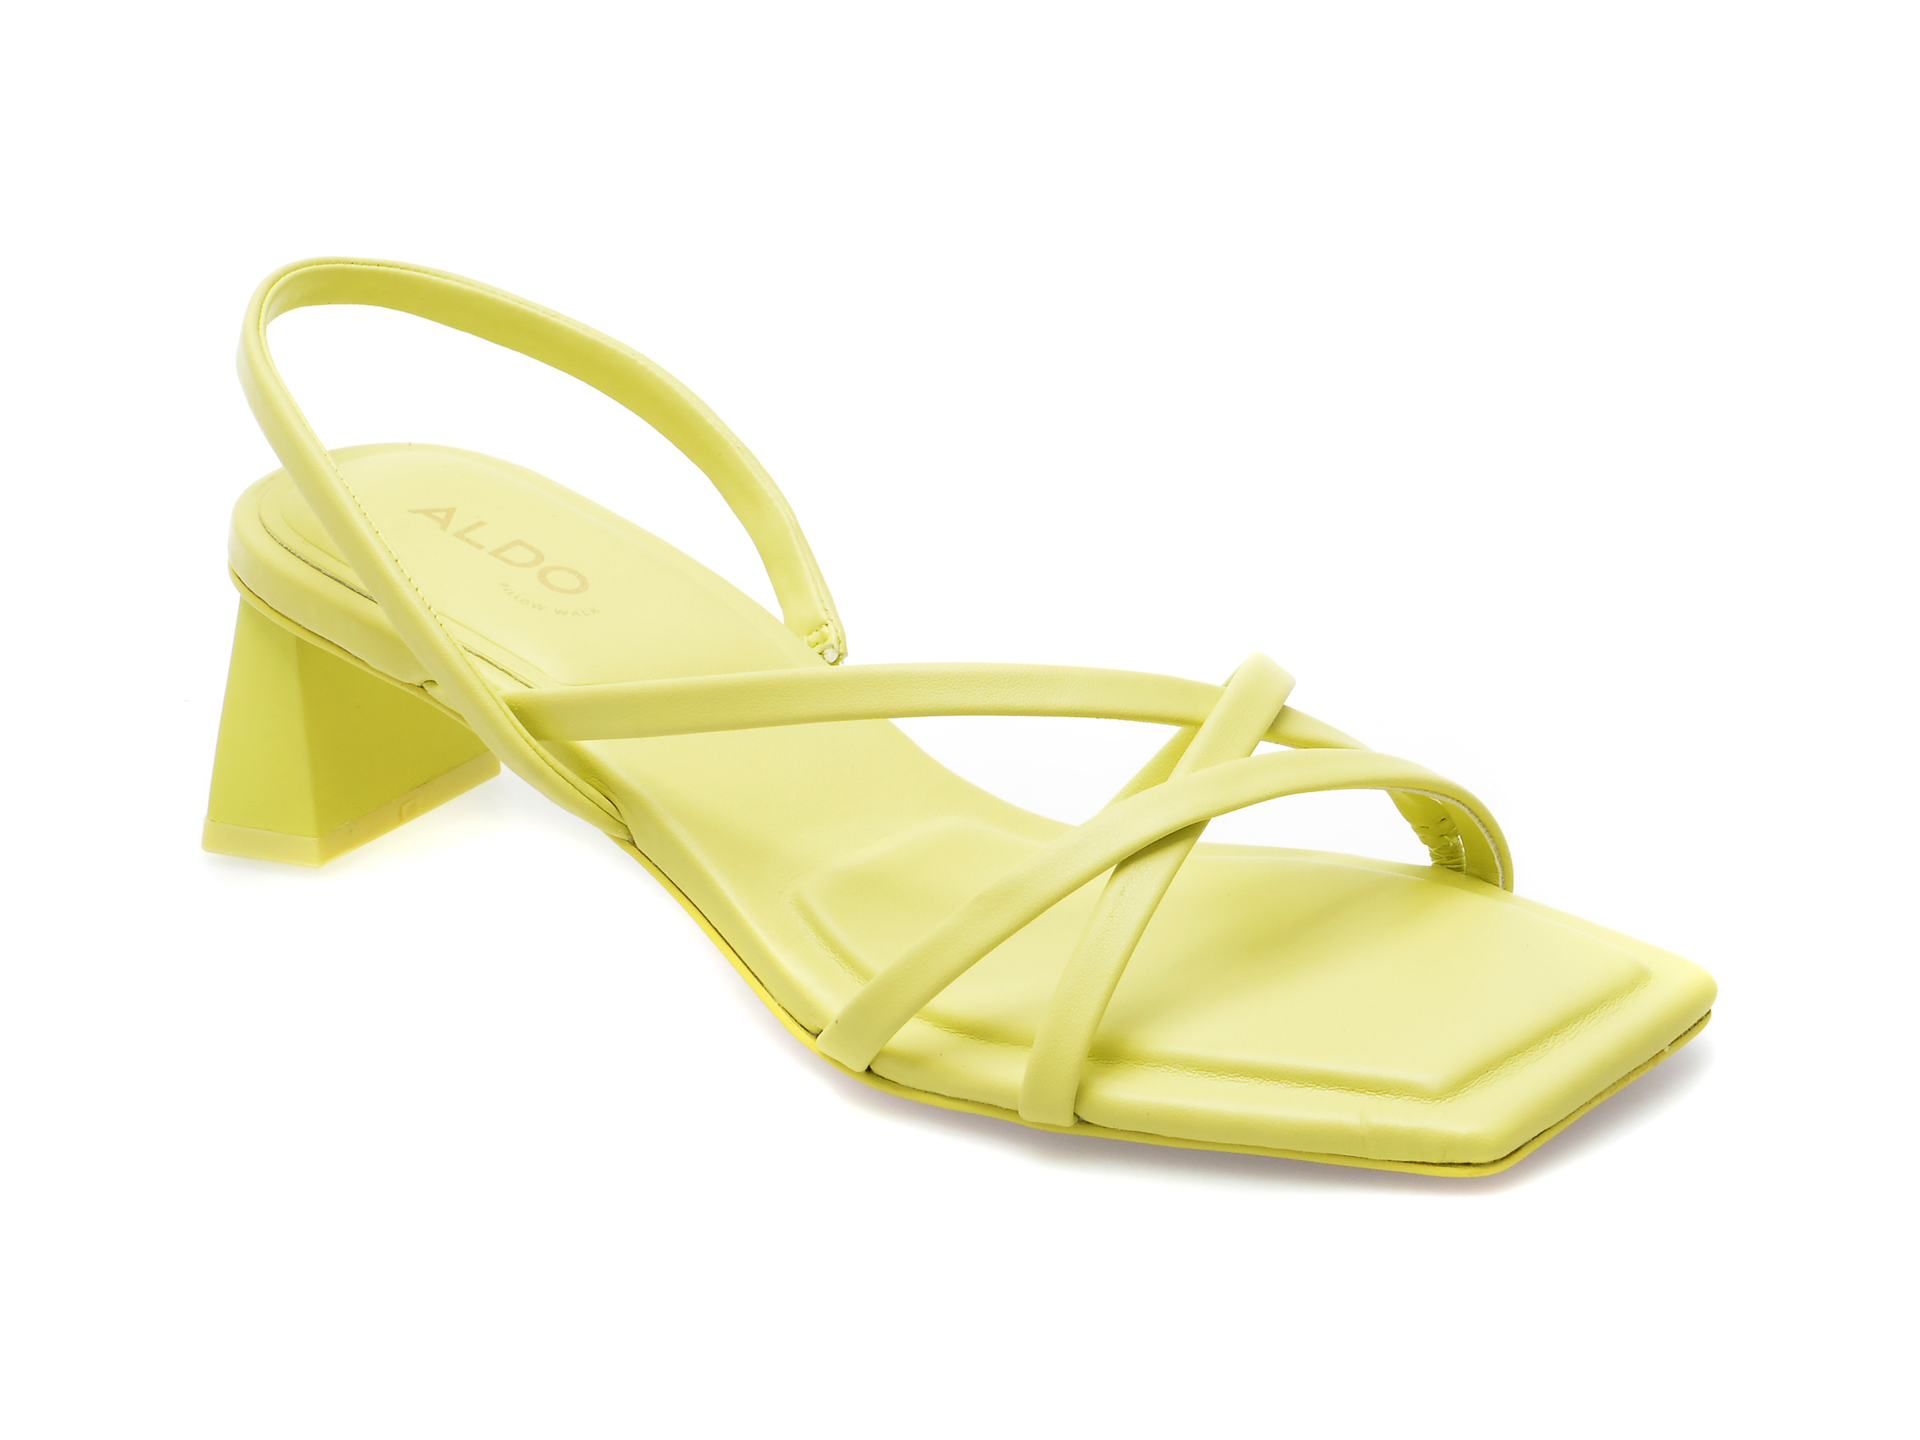 Sandale ALDO galbene, MINIMA720, din piele ecologica Answear 2023-05-31